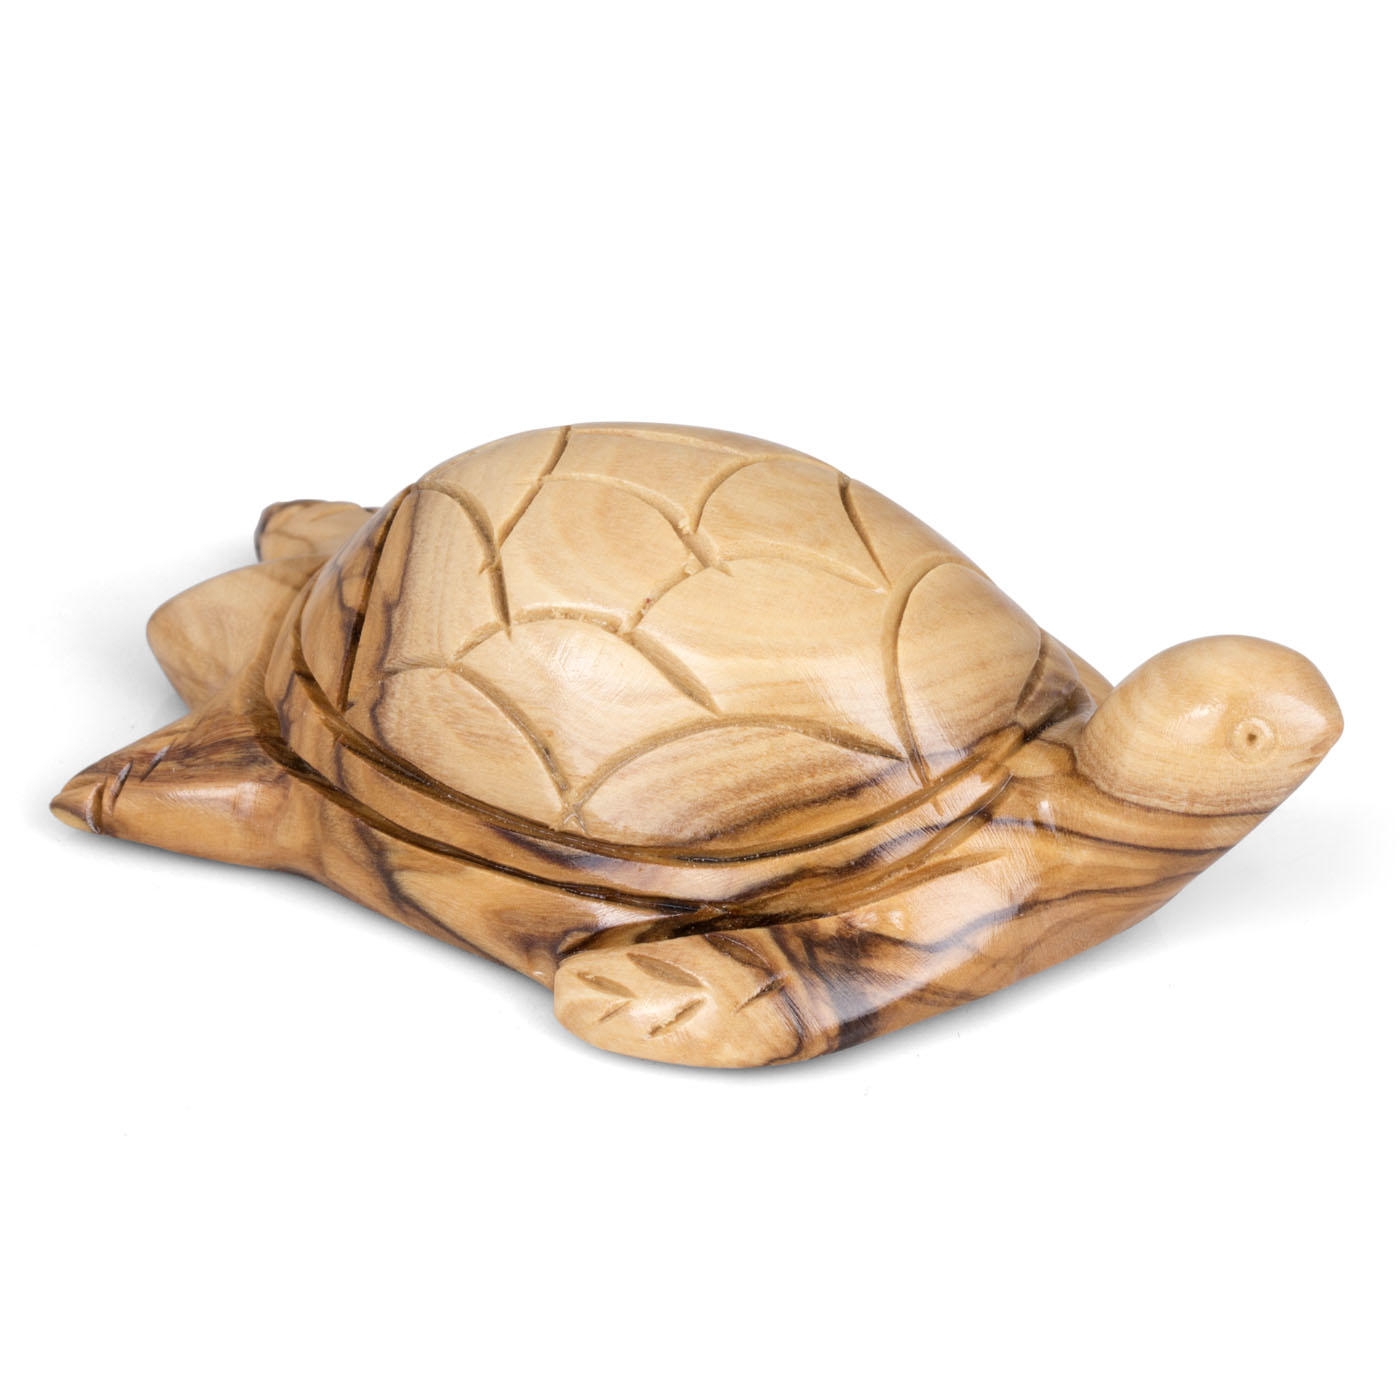 Olive Wood Turtle Figurine - 1